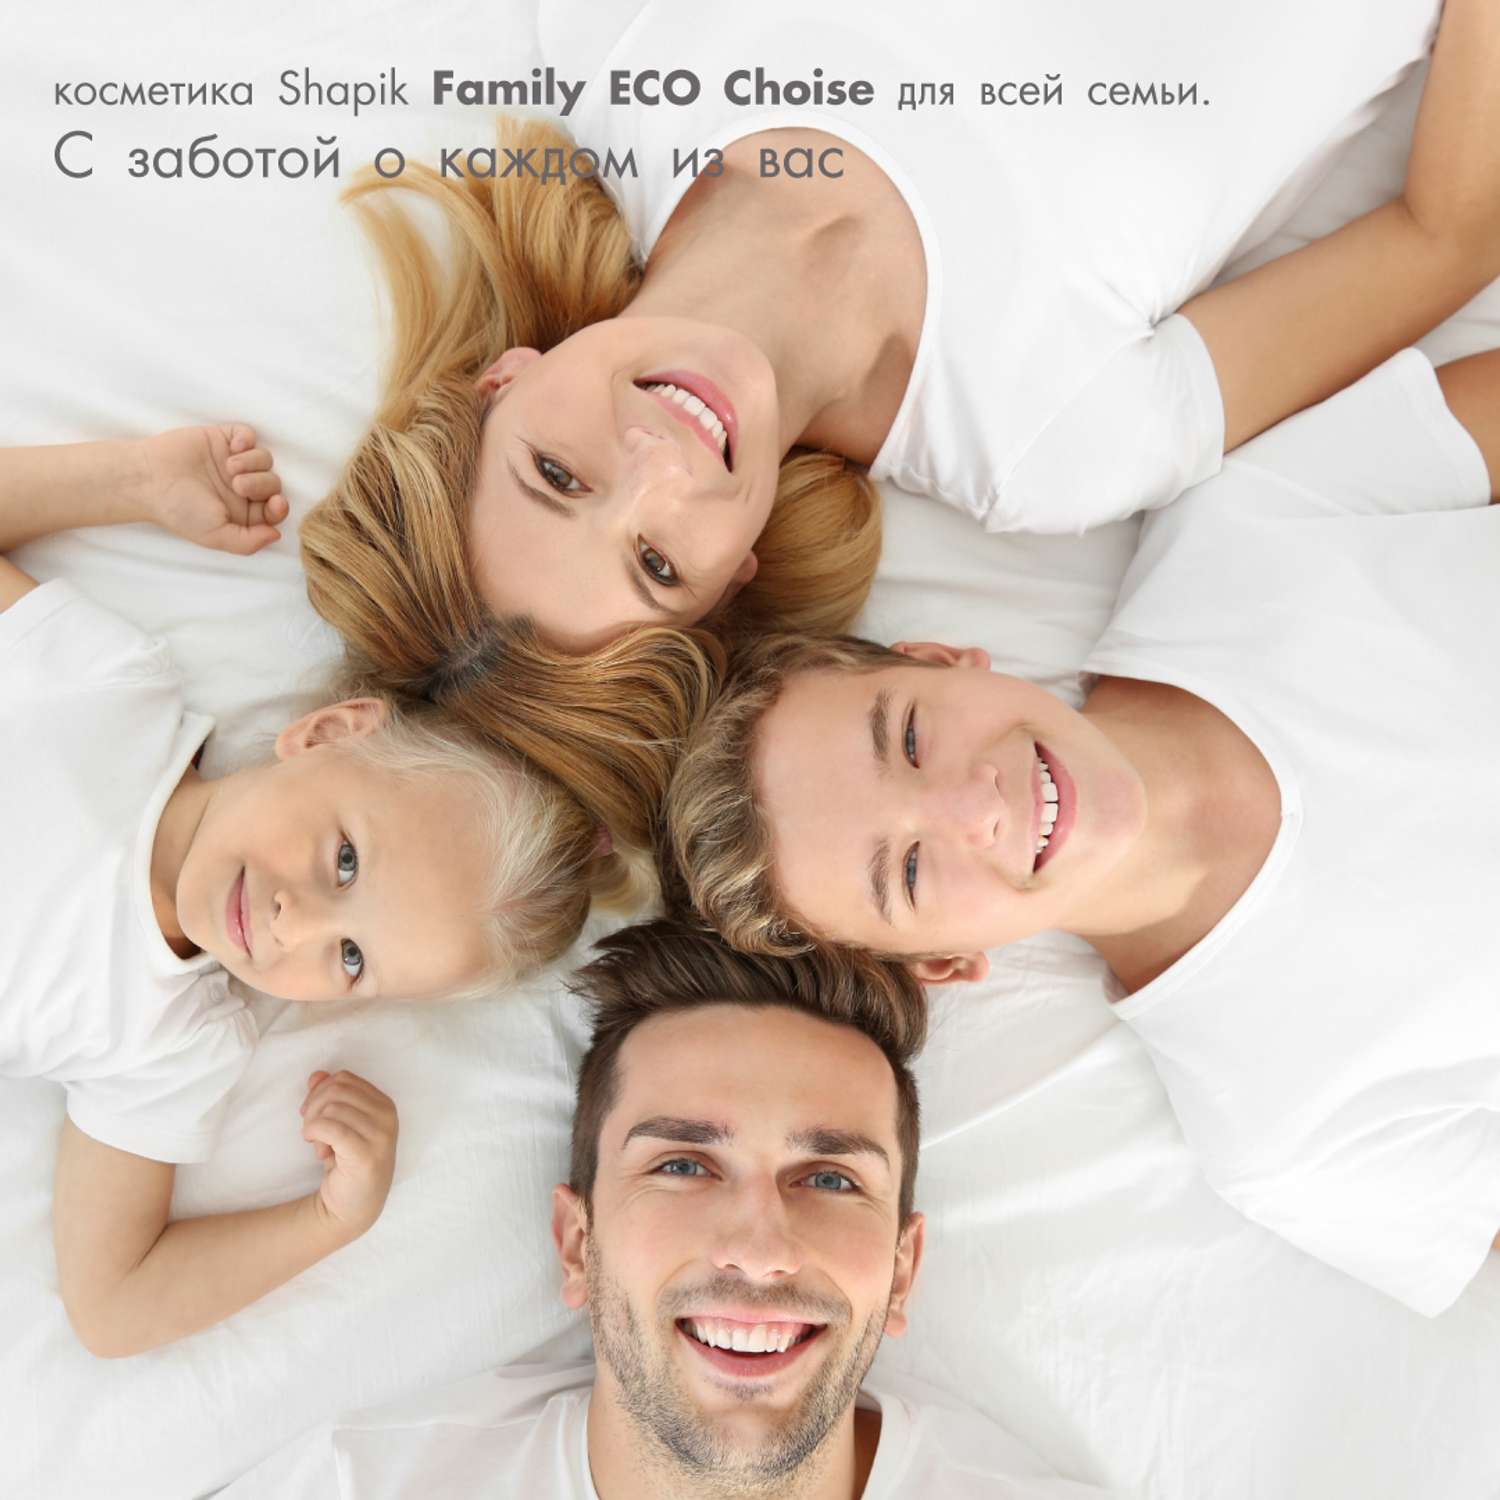 Пена для ванны Shapik Family choice 1000 мл расслабление и увлажнение - фото 6